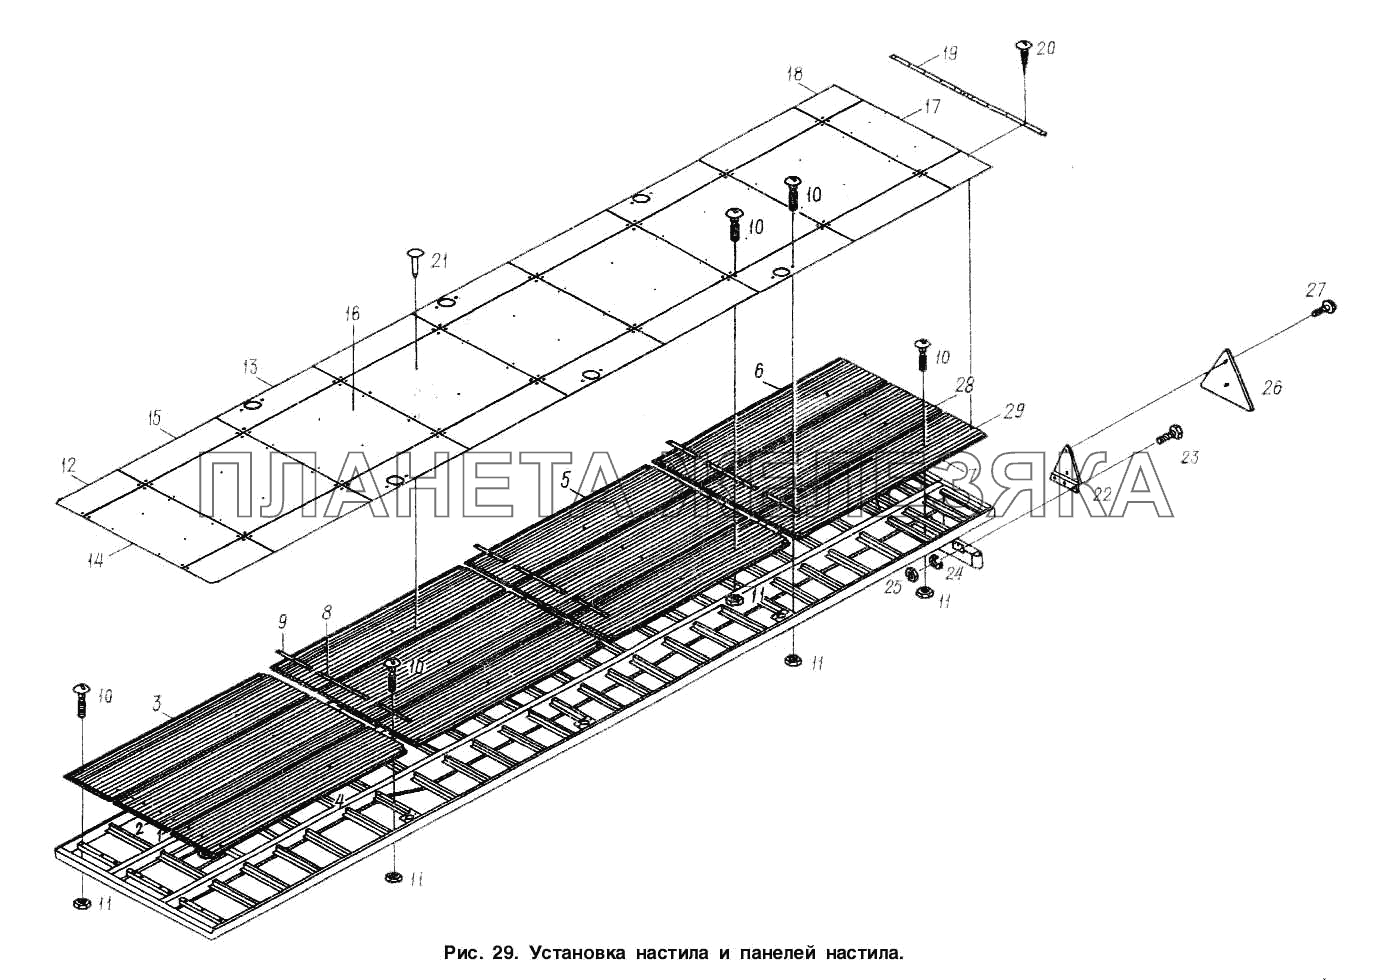 Установка настила и панелей настила МАЗ-93802